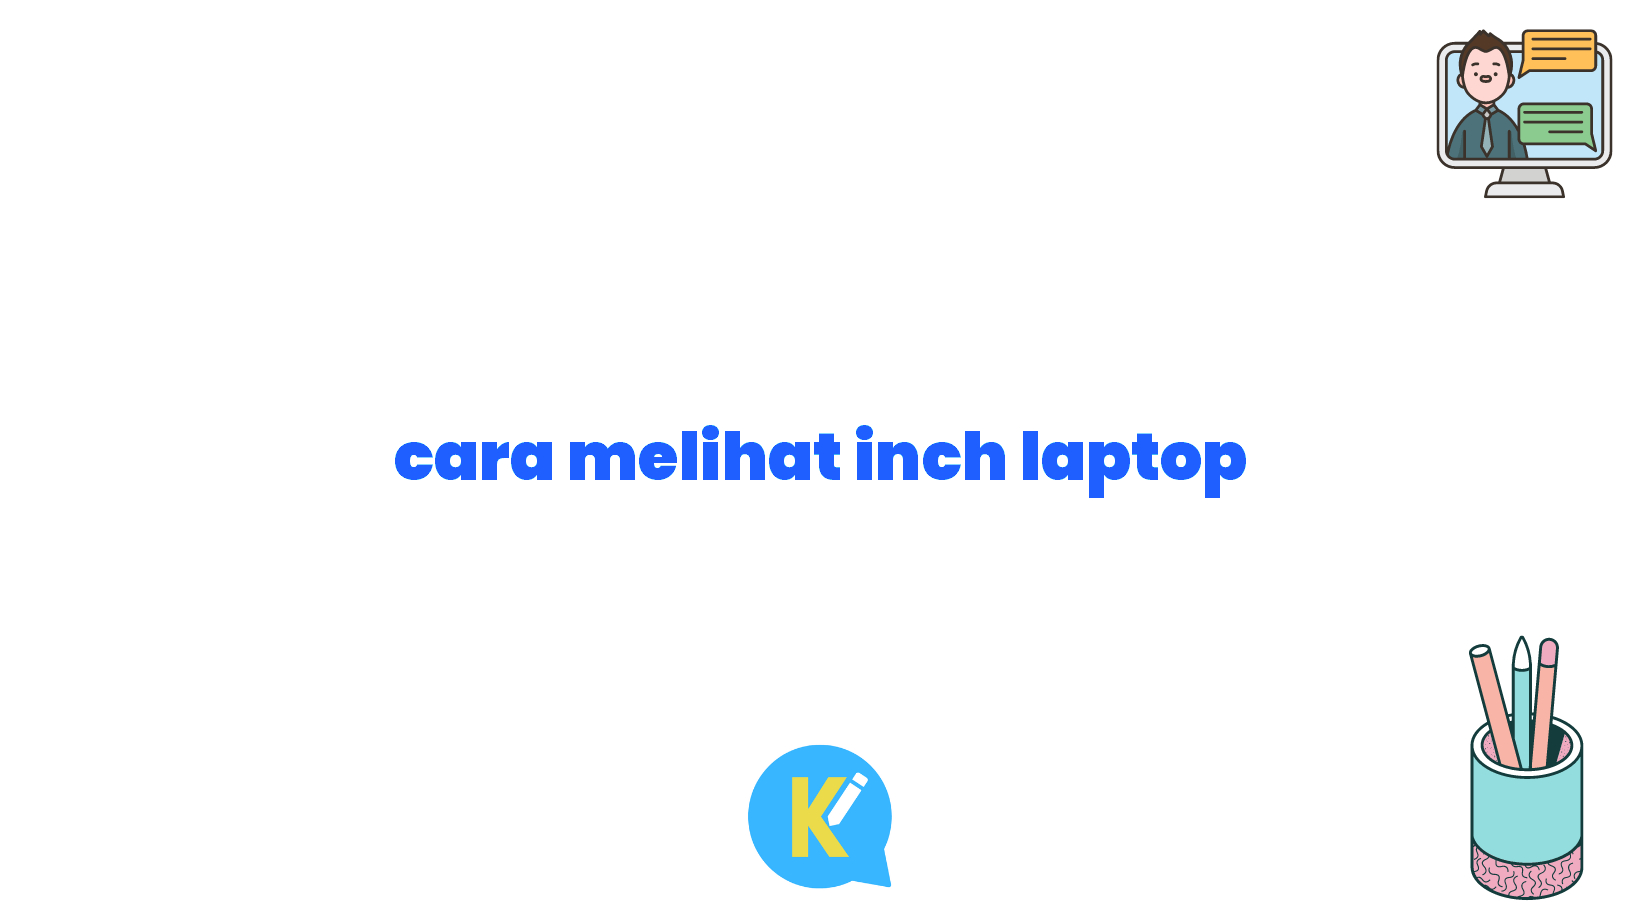 cara melihat inch laptop